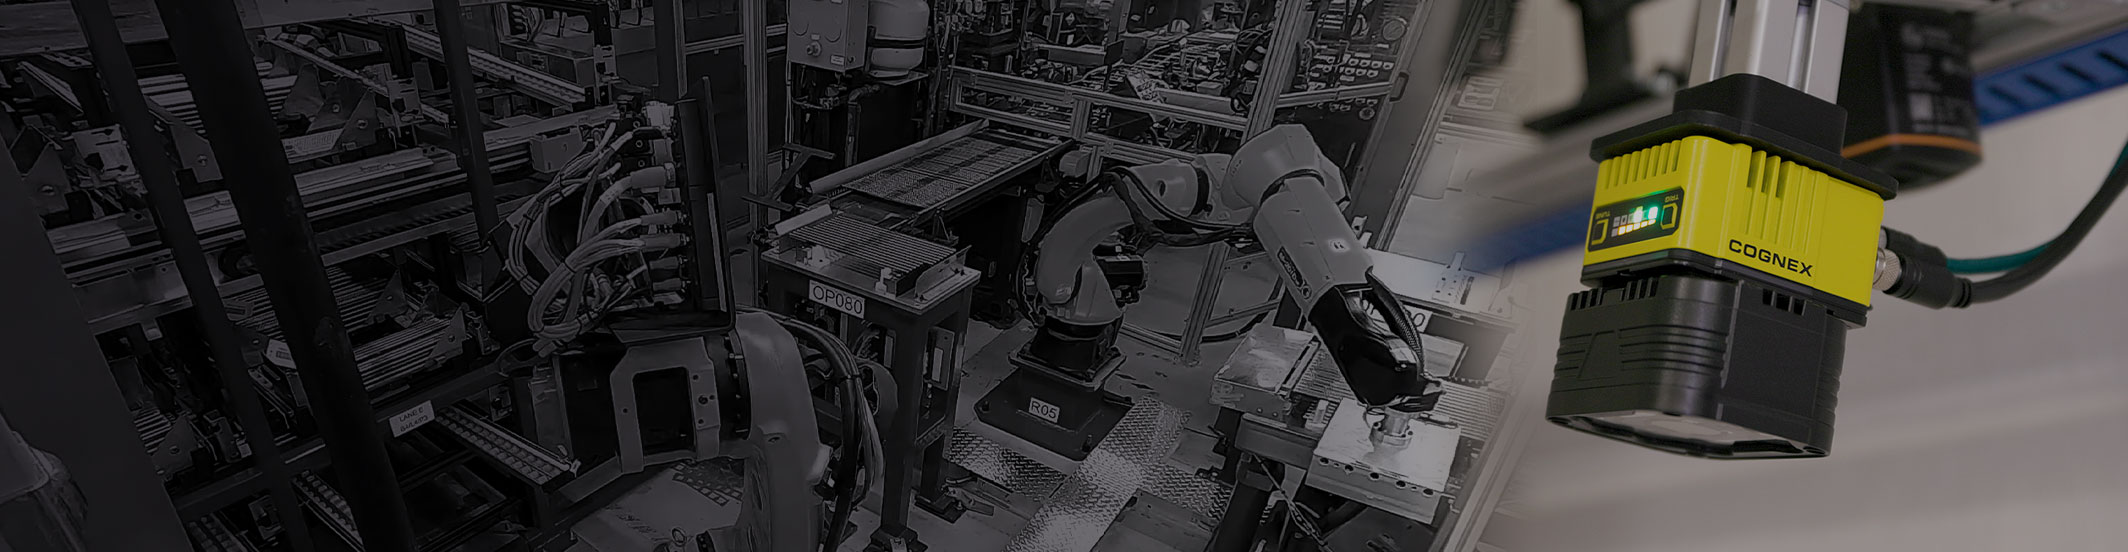 Eine Reihe von Geräten, Drähten und Roboterarmen in einer Fertigungsanlage, mit einem Bildverarbeitungssystem von Cognex im Vordergrund. 